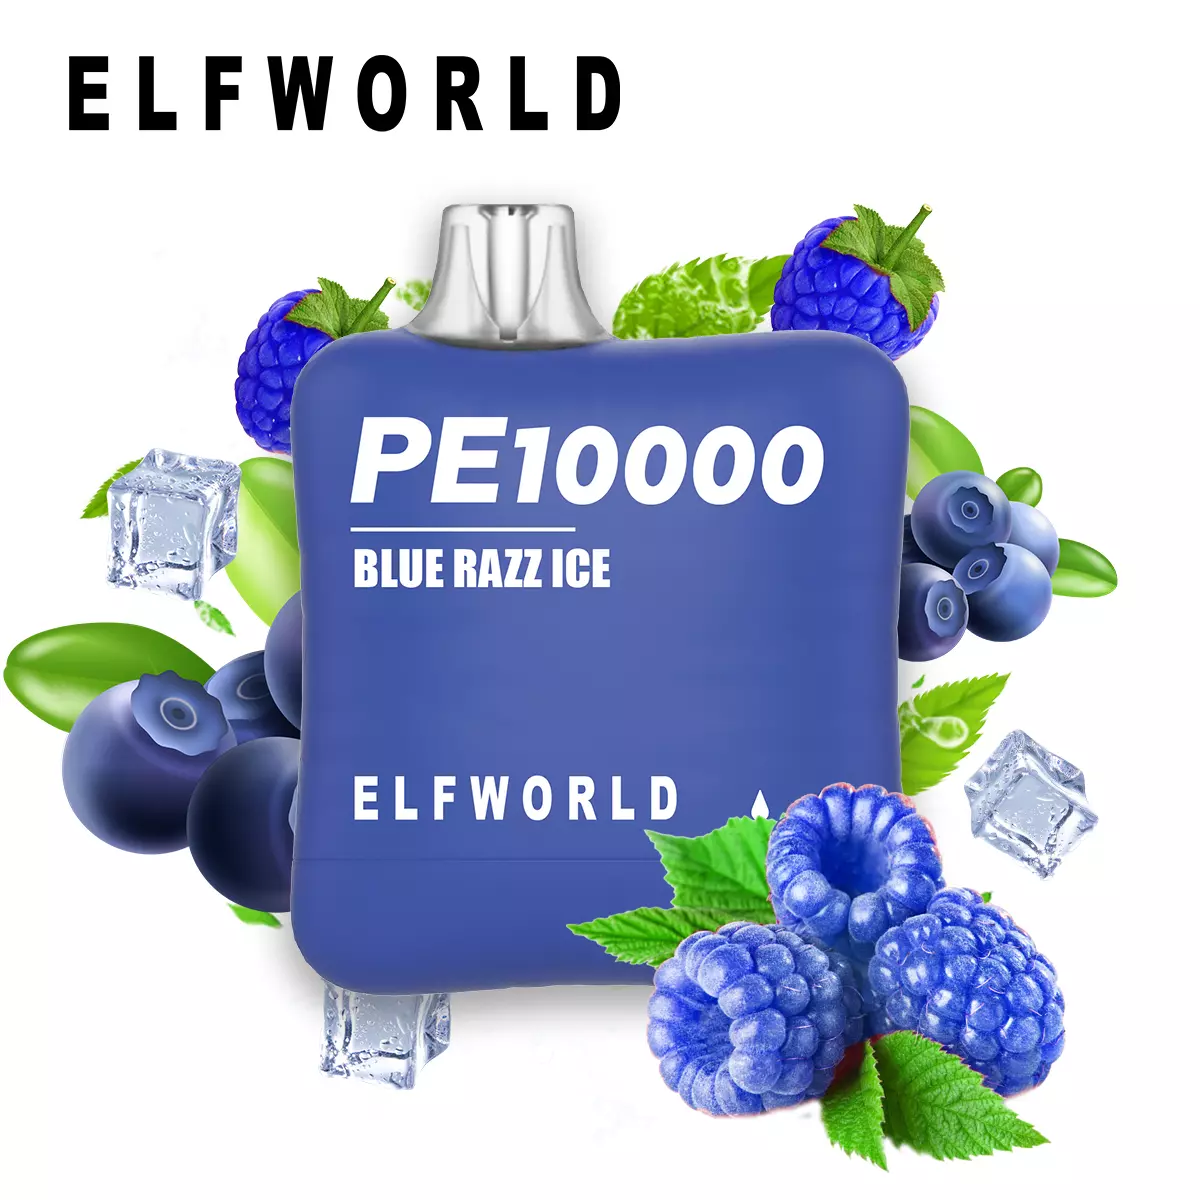 Blue Razz Ice ELF WORLD PE 10000